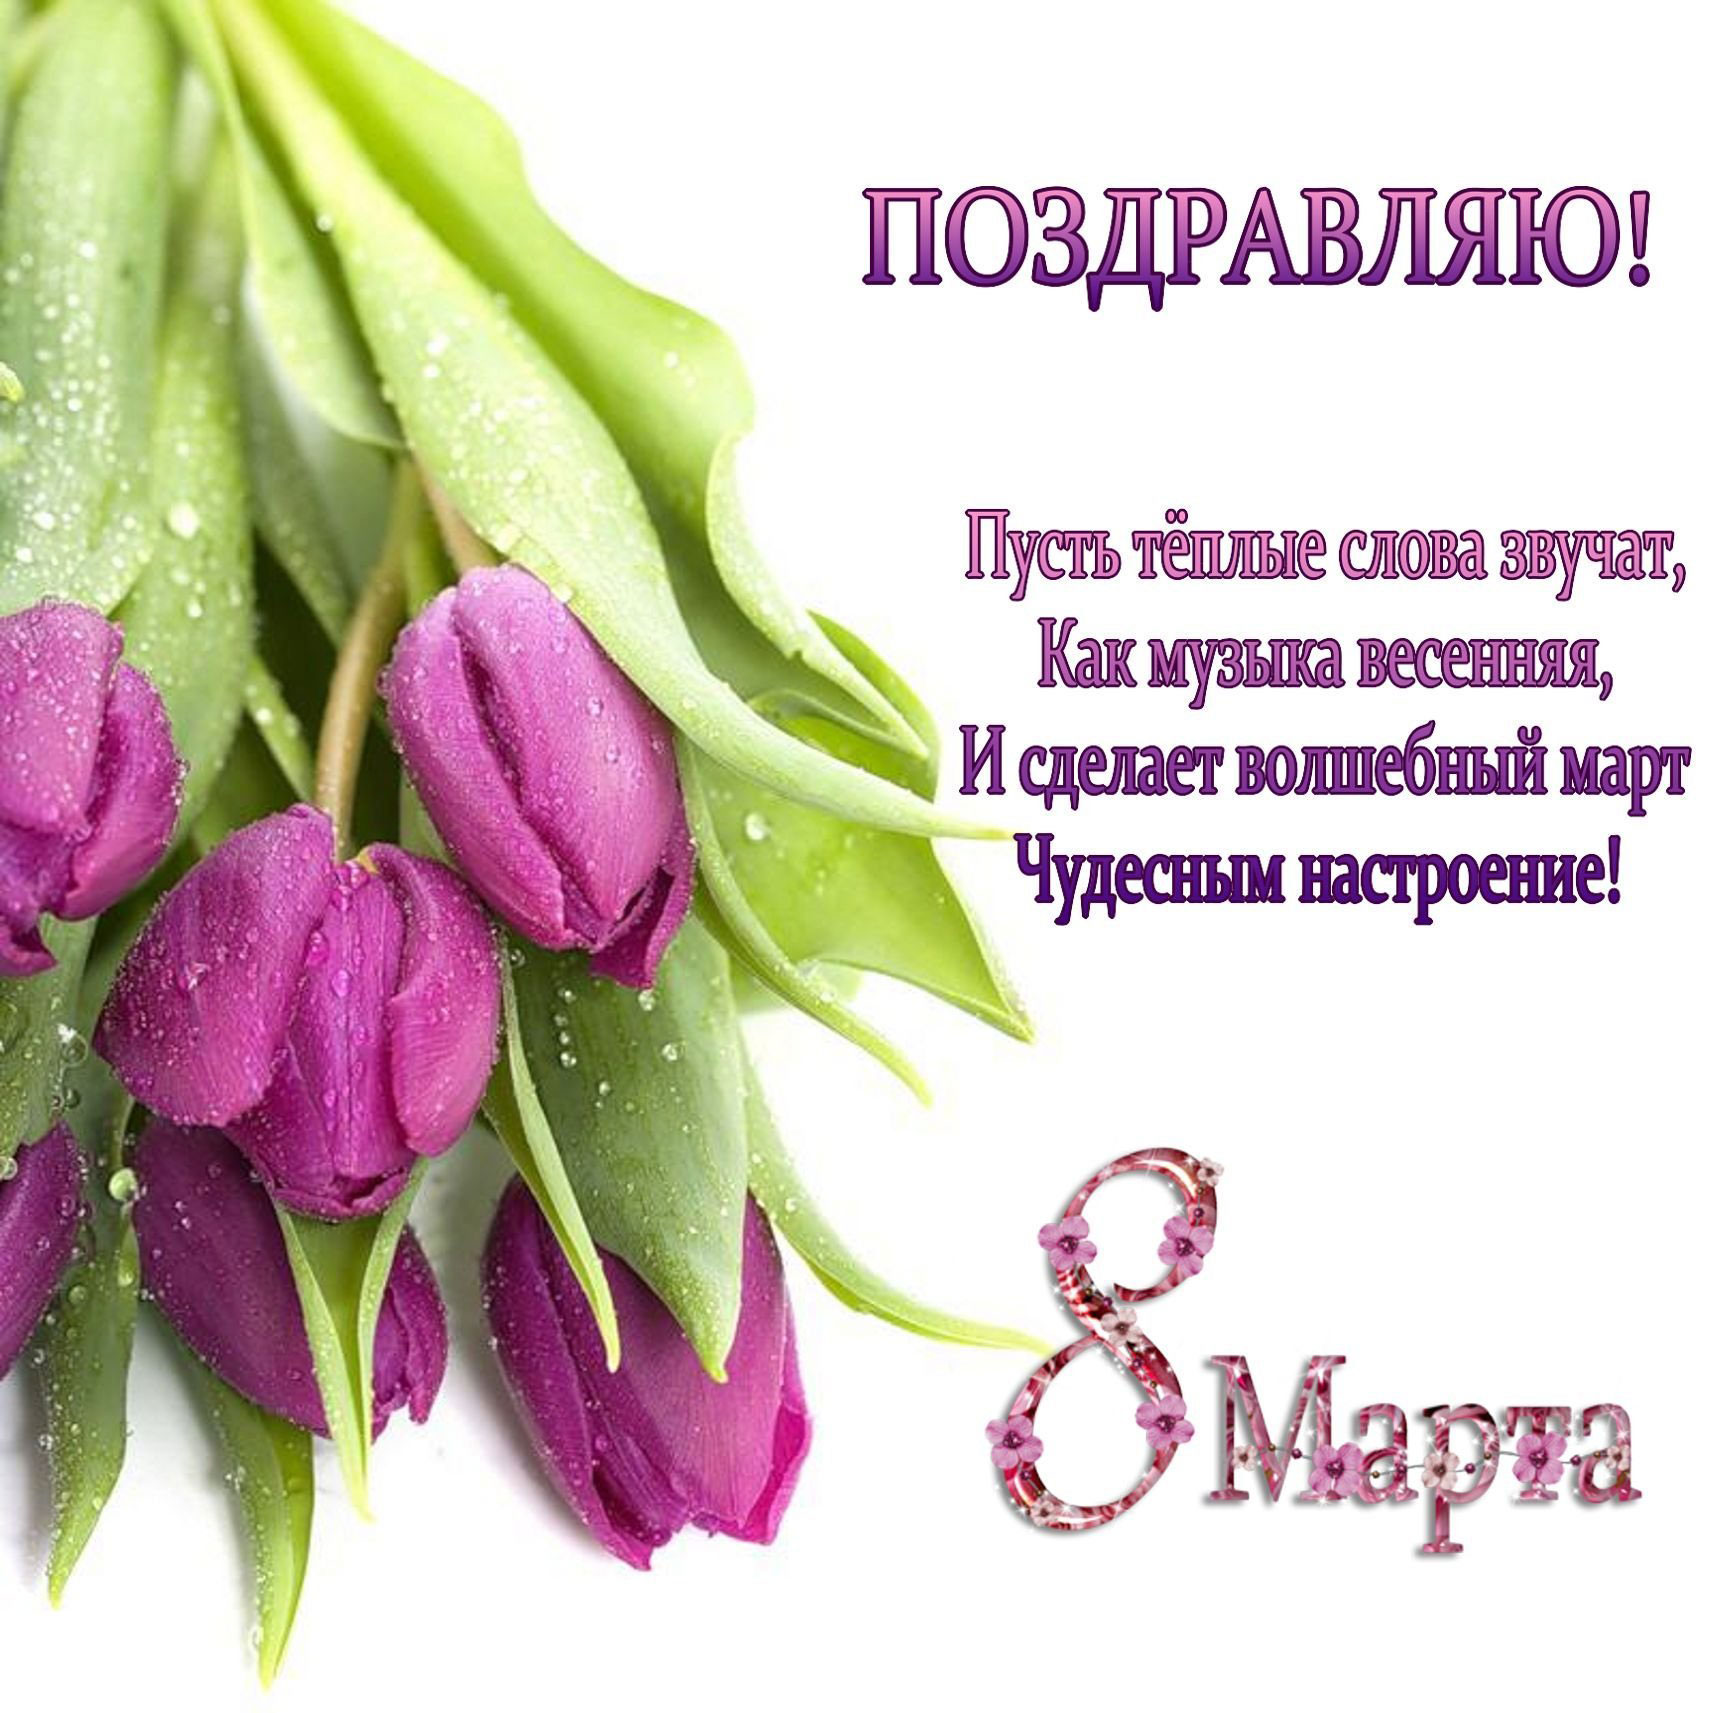 Искреннее поздравление на 8 марта для самой красивой и прекрасной подруги с цветами на открытке!